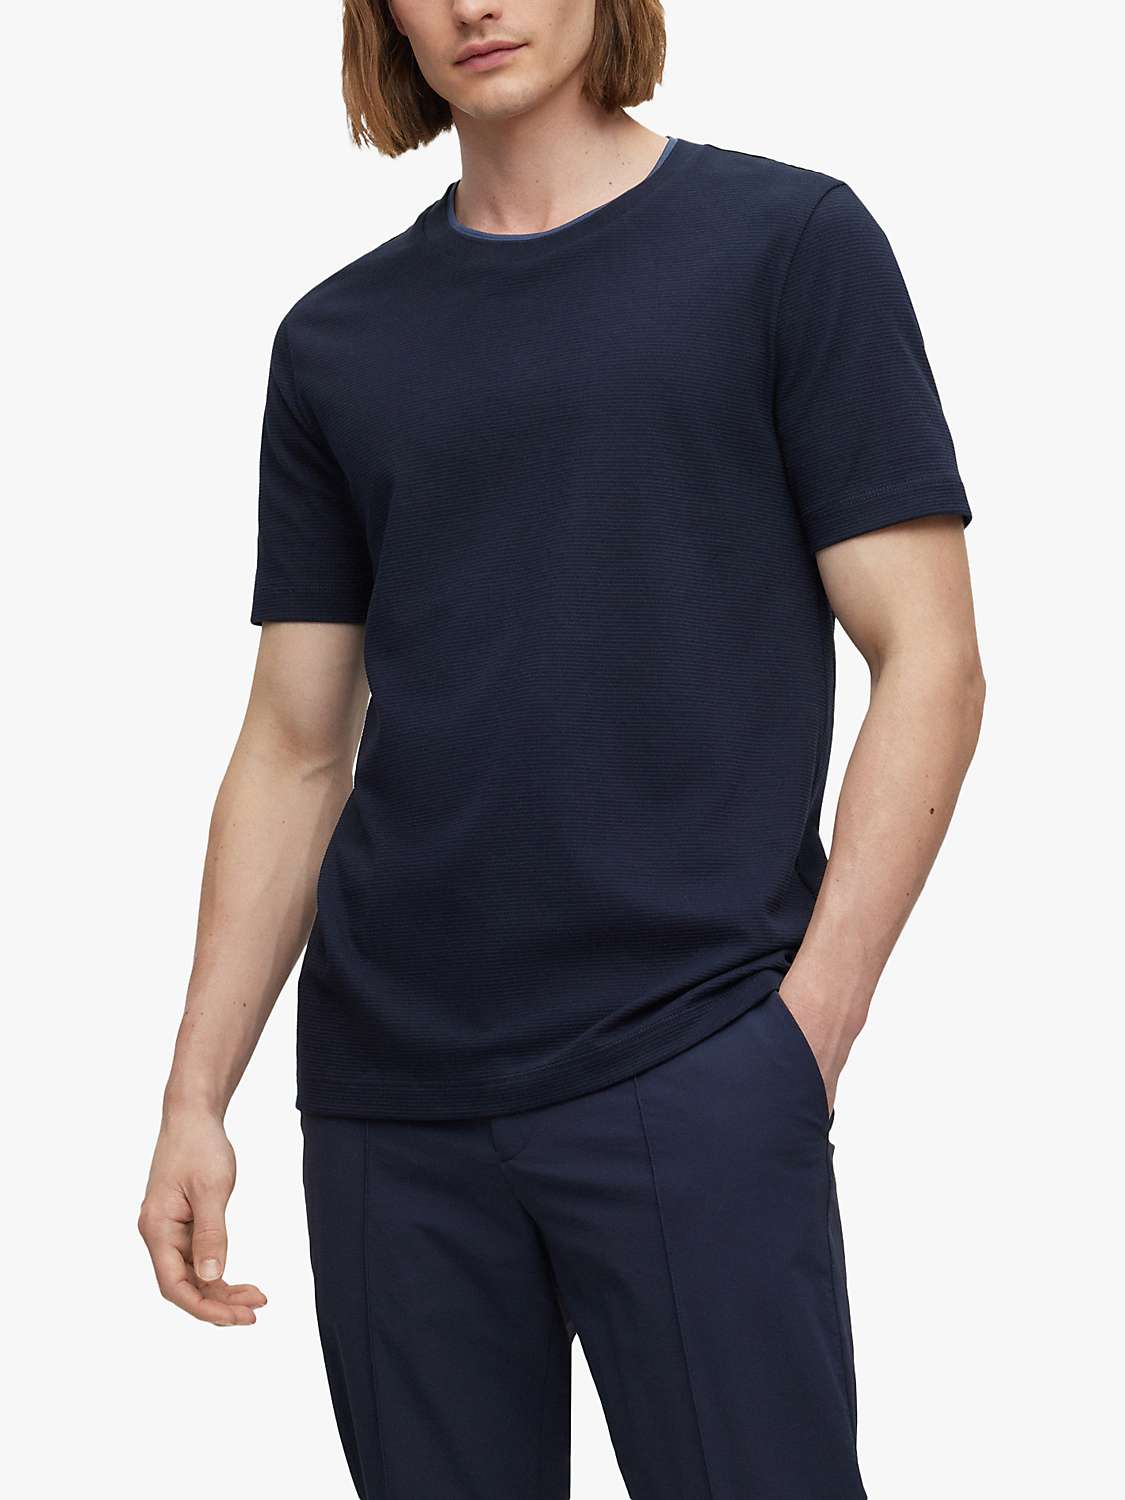 Buy BOSS Tessler 140 Short Sleeve Plain T-Shirt, Navy Online at johnlewis.com